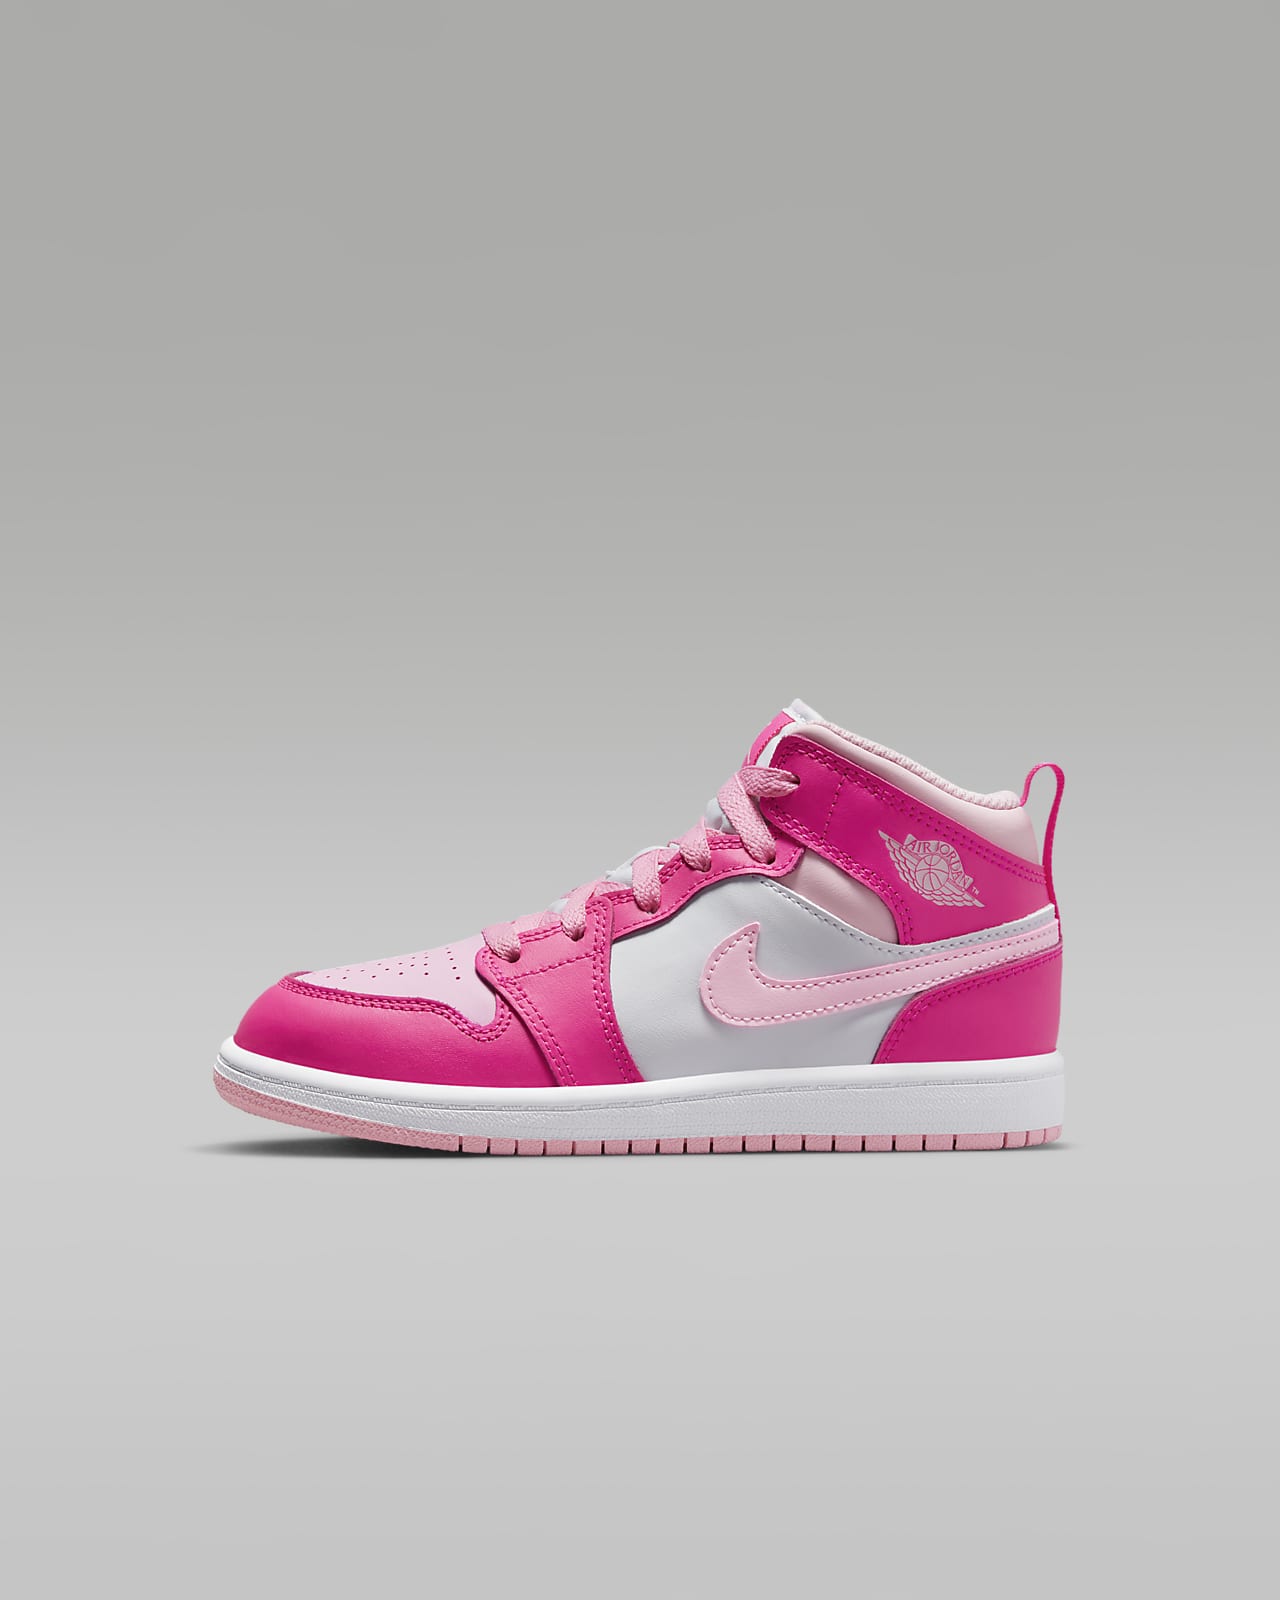 Air Jordan 1 Mid Leather Sneakers in Pink - Nike